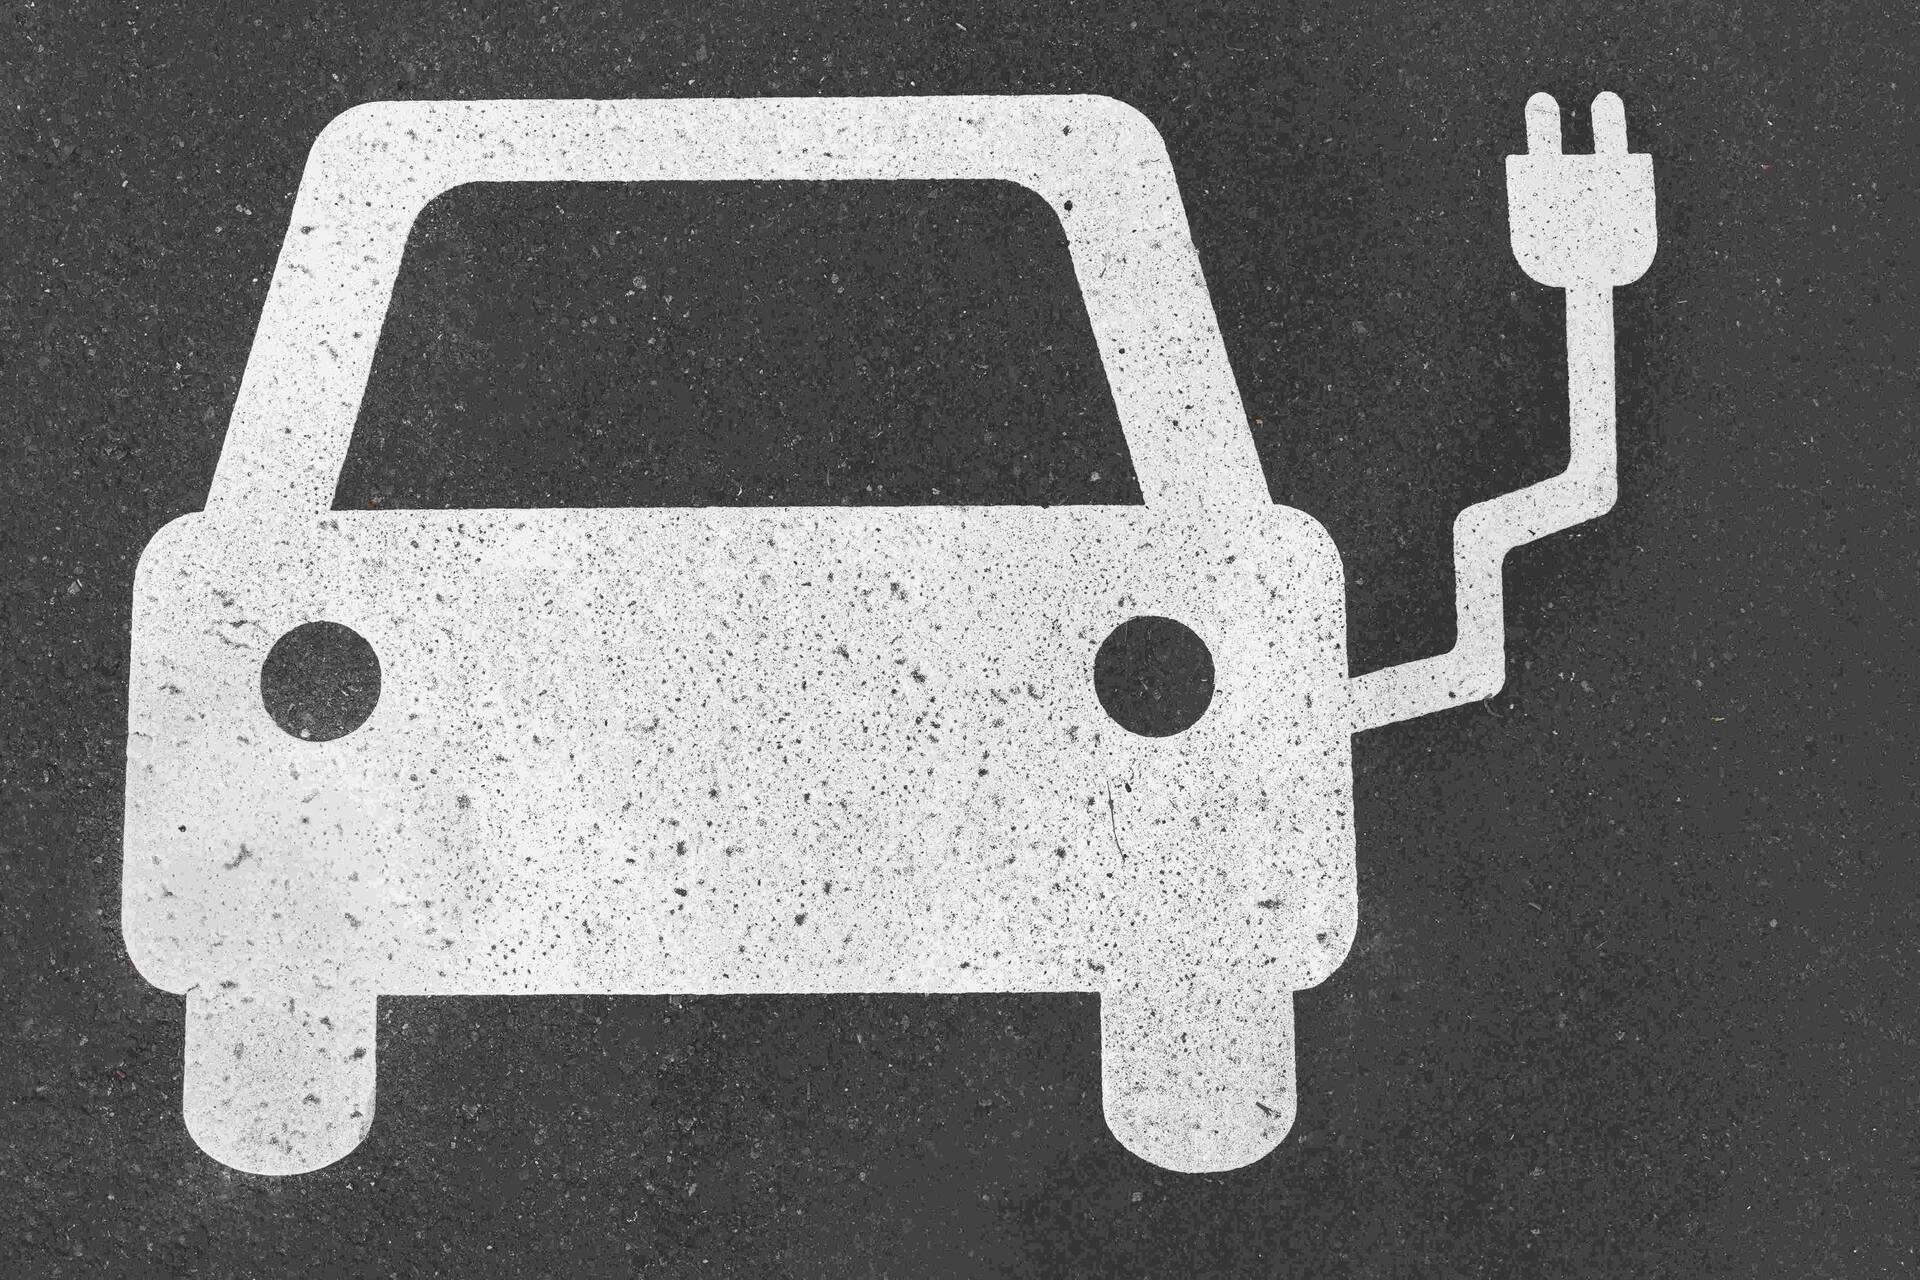 Elektrisk mobilitet: elektrisk mobilitet består av batteri-, väte- och bränslecellsfordon och fordon som drivs av syntetiska bränslen